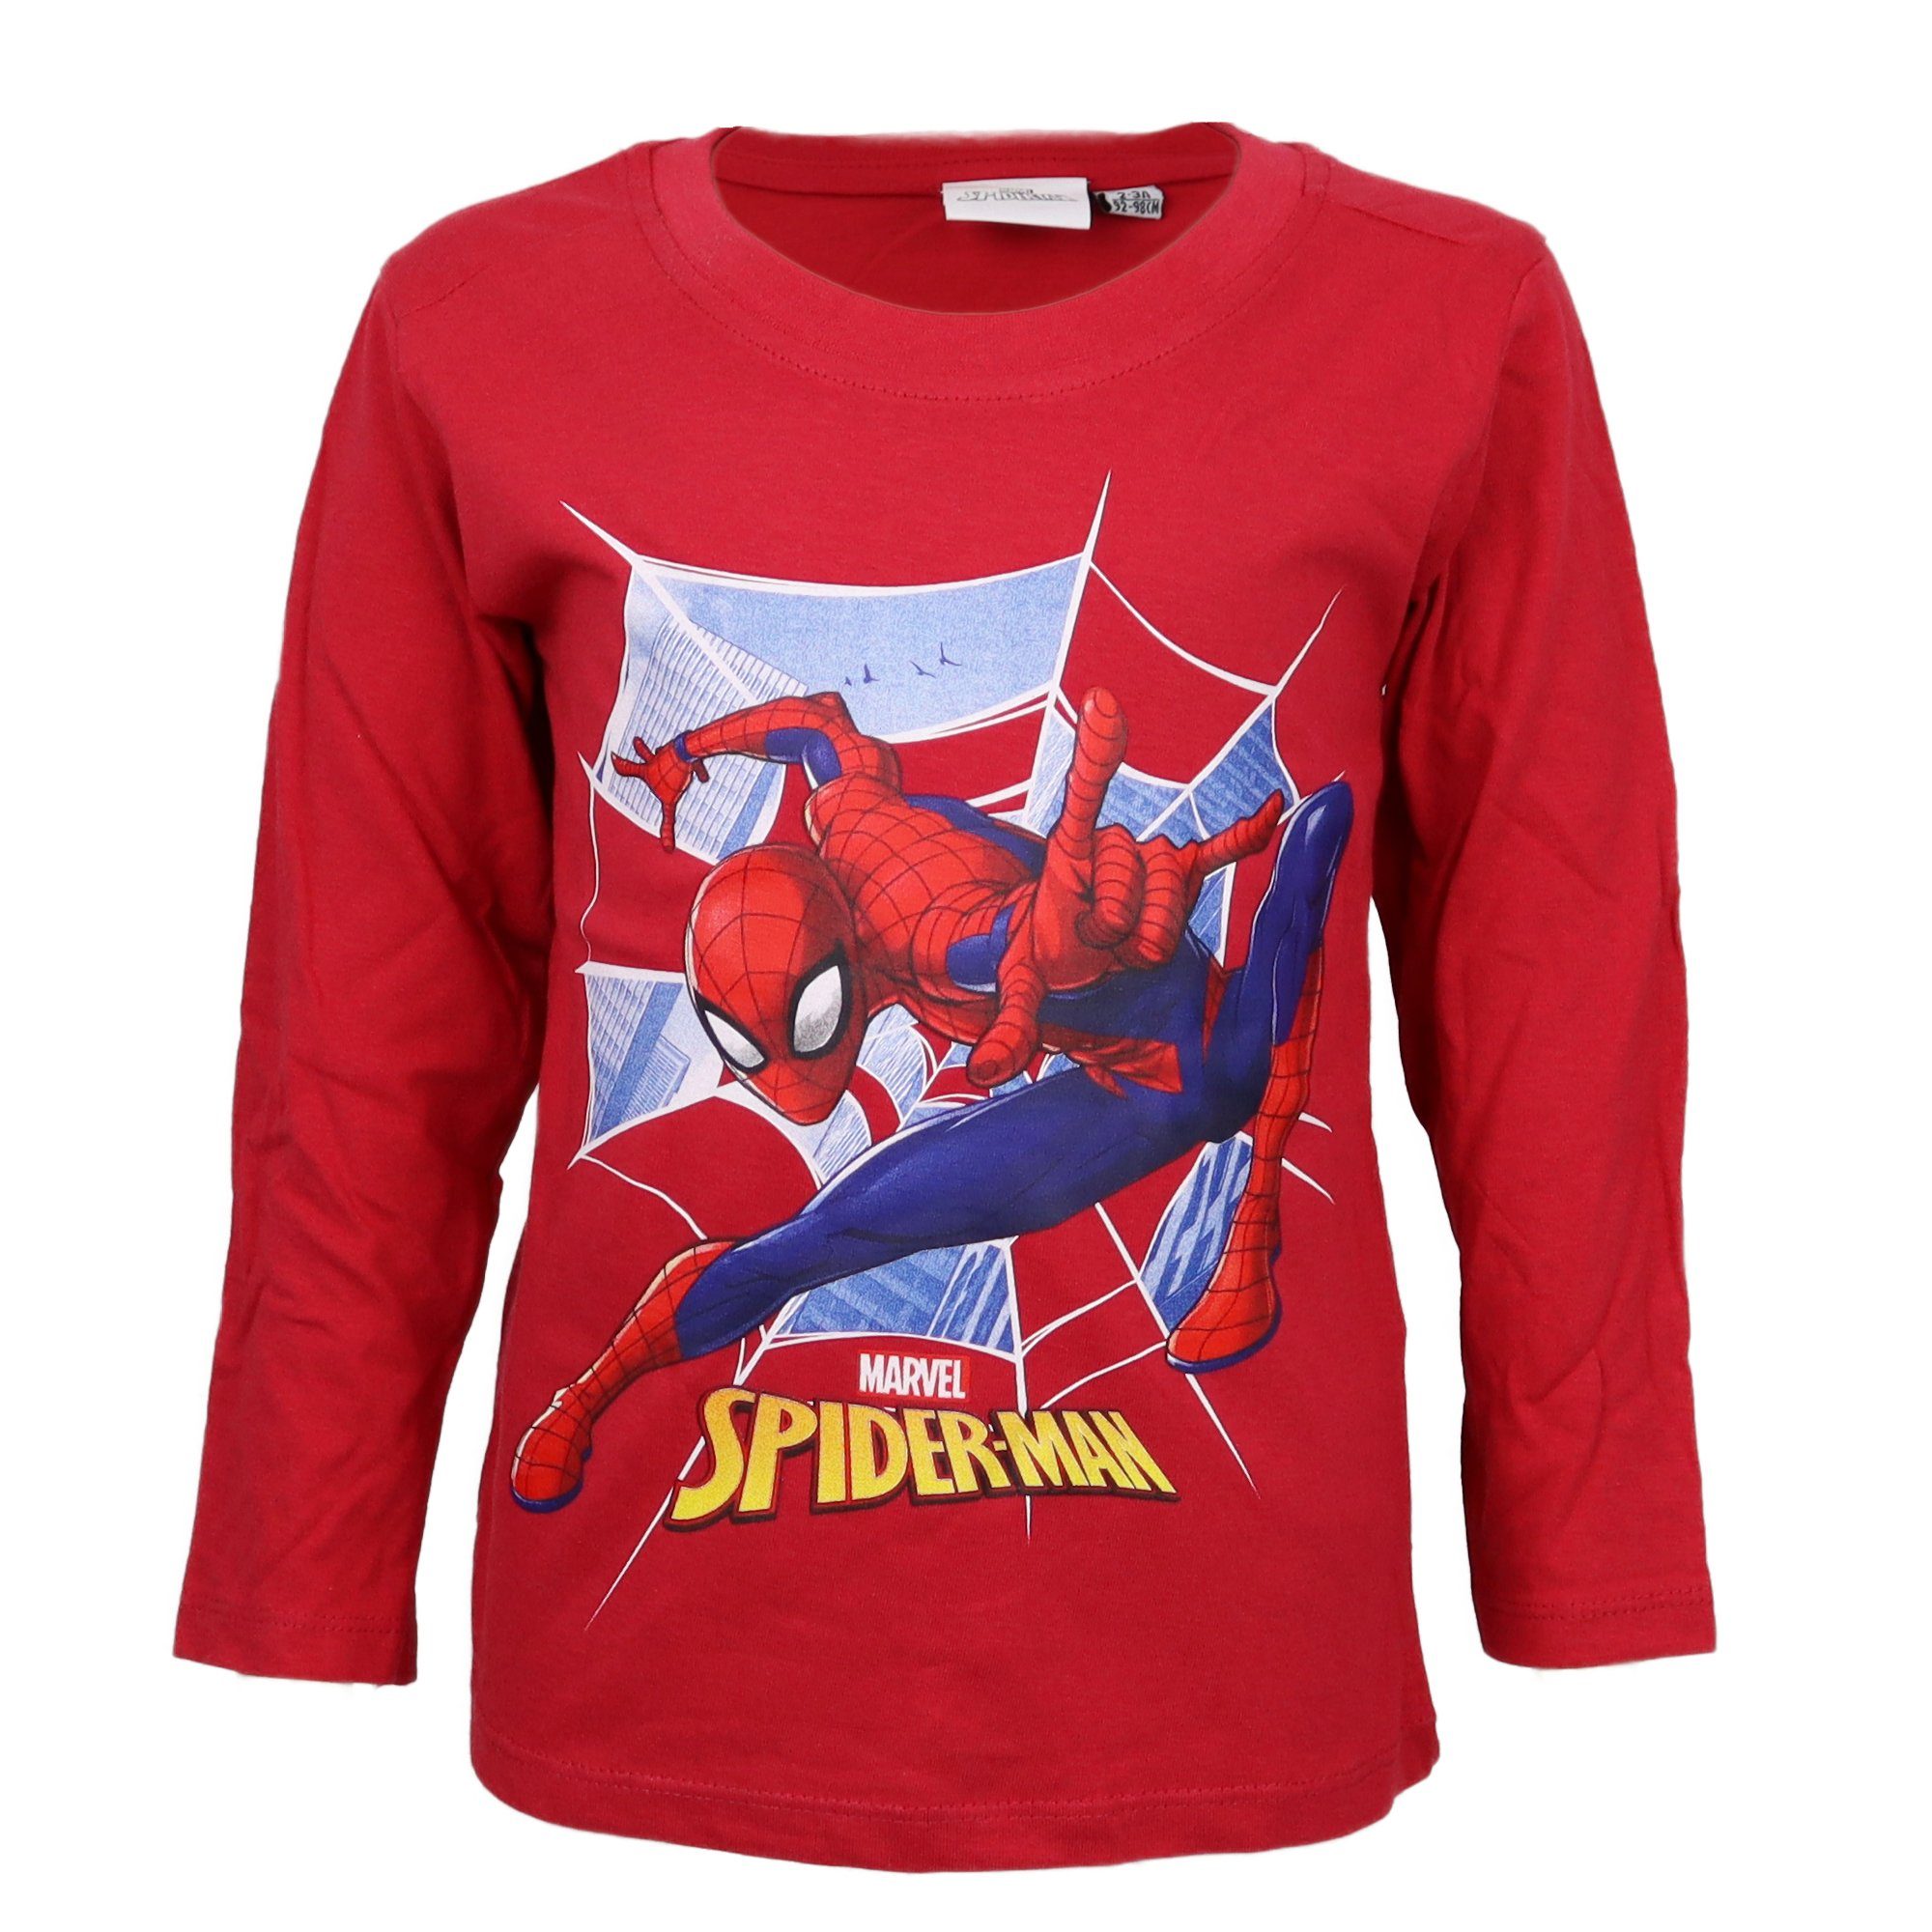 Spiderman Langarmshirt »Kinder Shirt in Blau oder Rot« Gr. 92 bis 116, 100%  Baumwolle online kaufen | OTTO